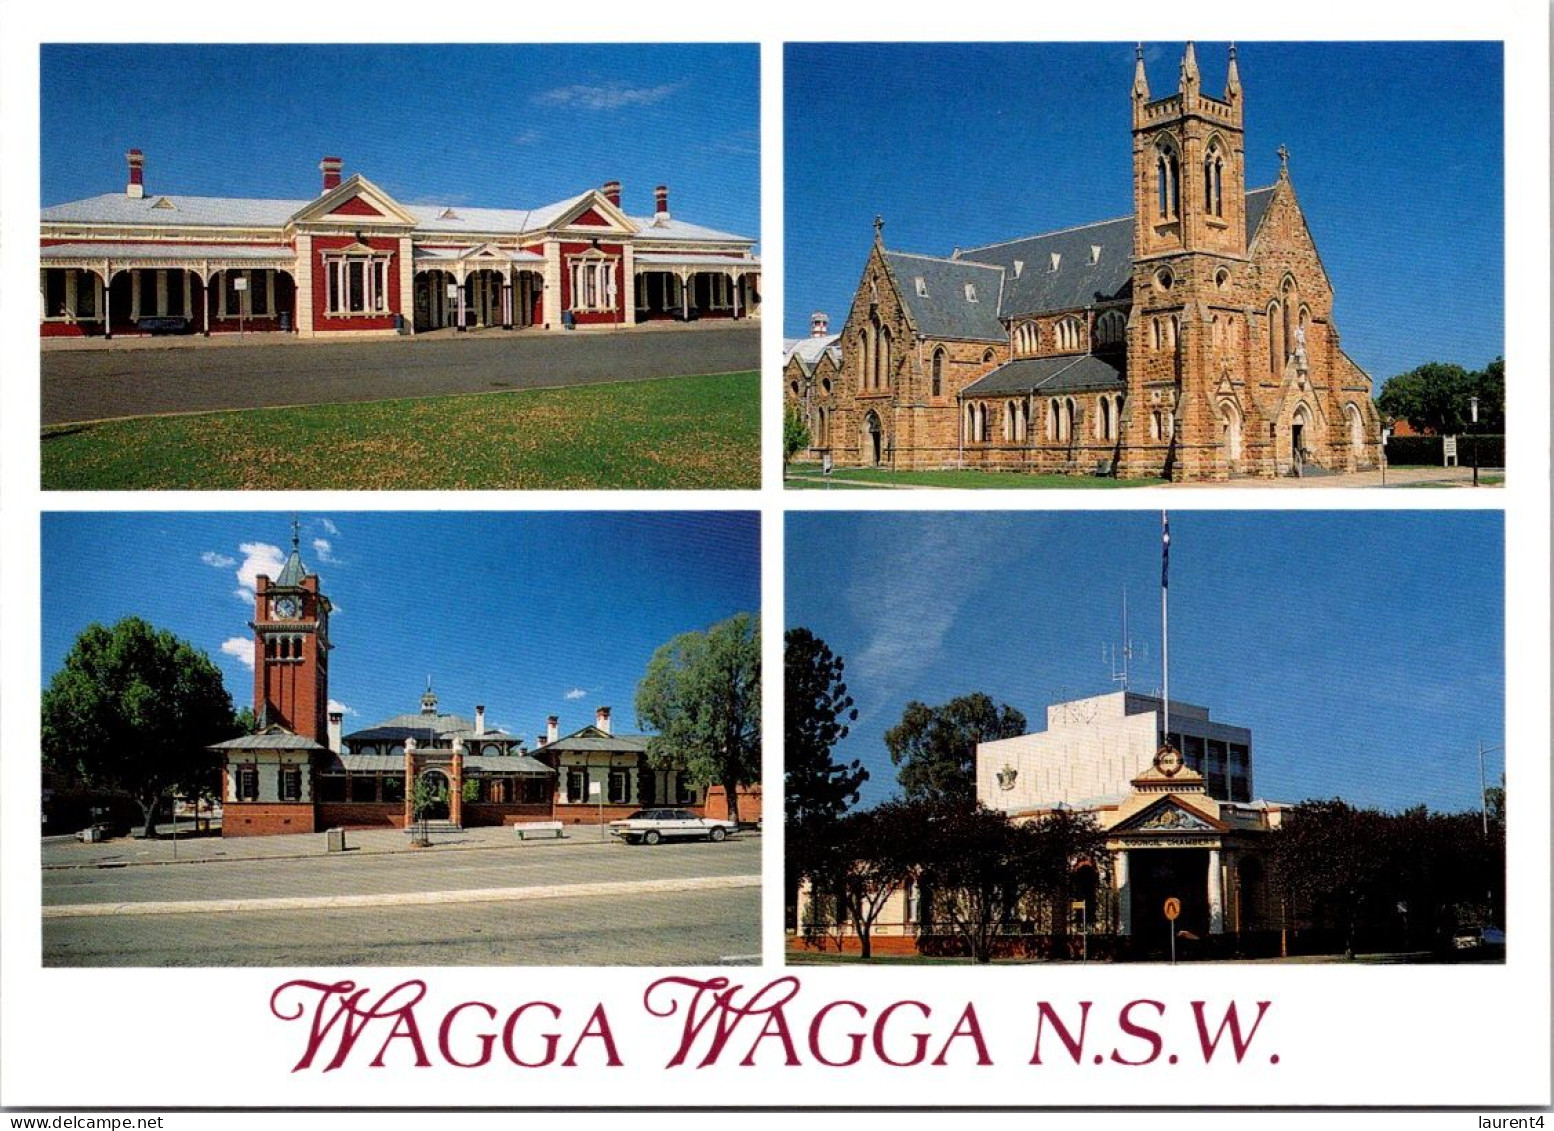 5-9-2023 (4 T 16) Australia - NSW - Wagga Wagga (4 Views) - Wagga Wagga